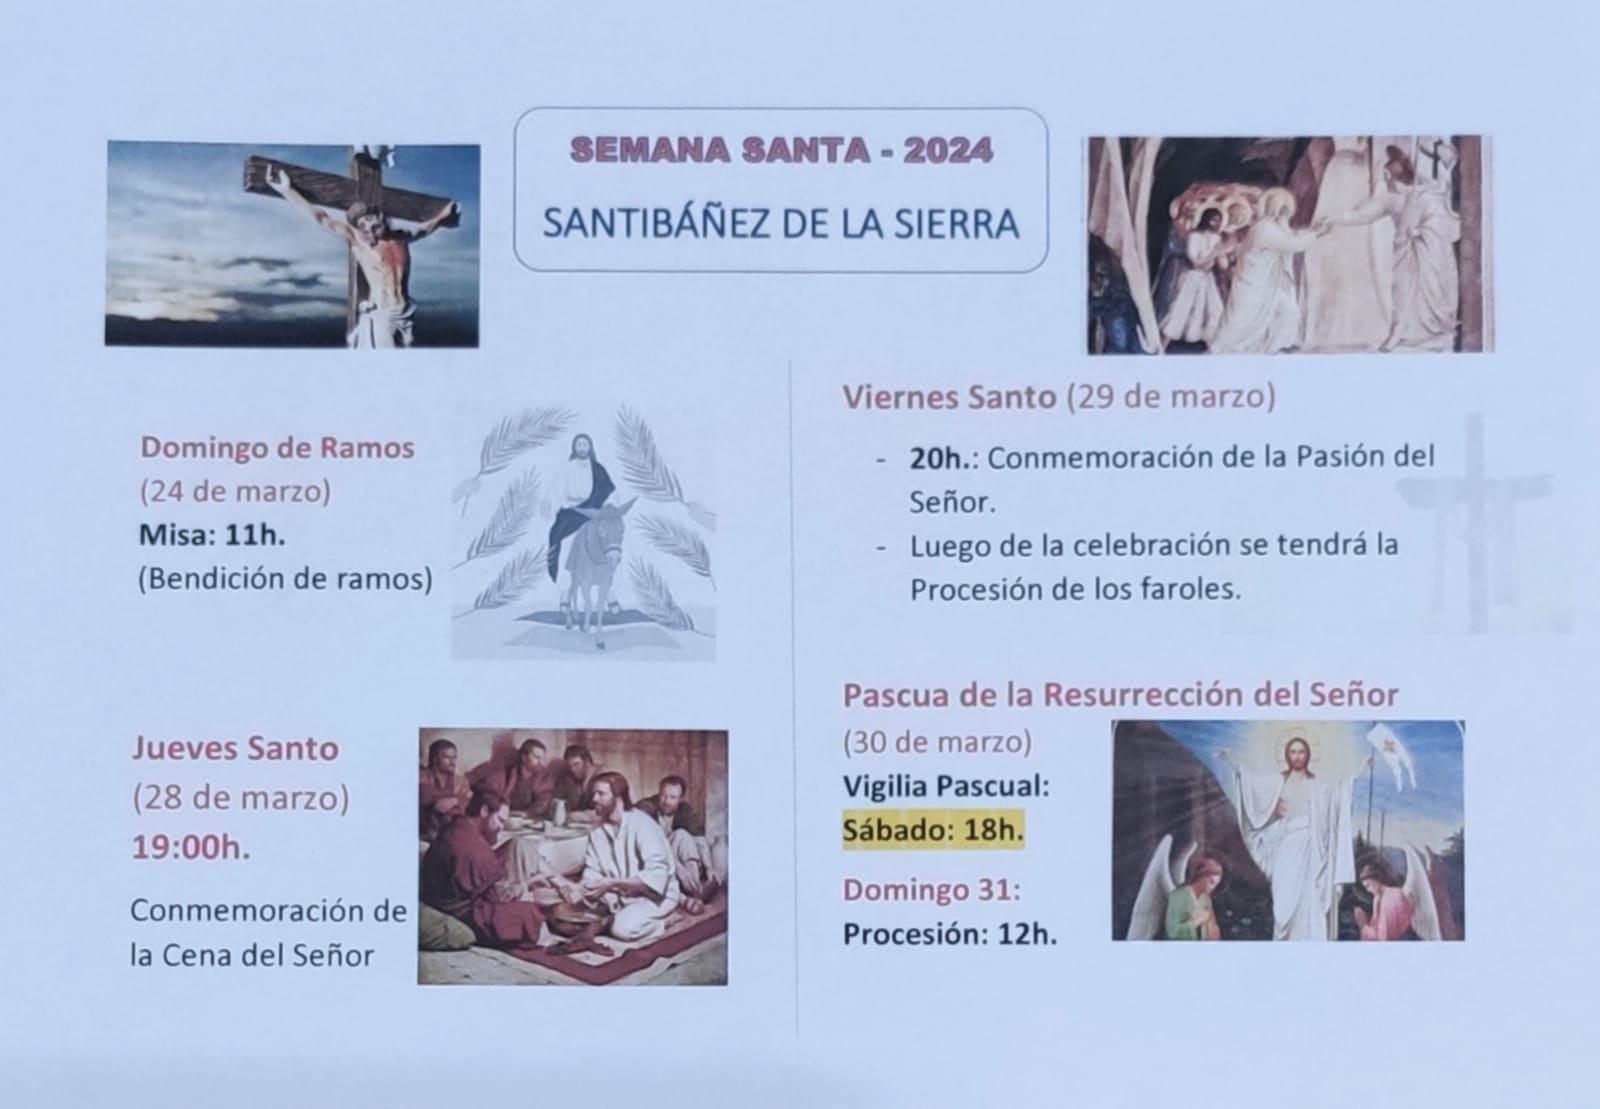 Semana-Santa-2024-Santibanez-de-la-Sierra